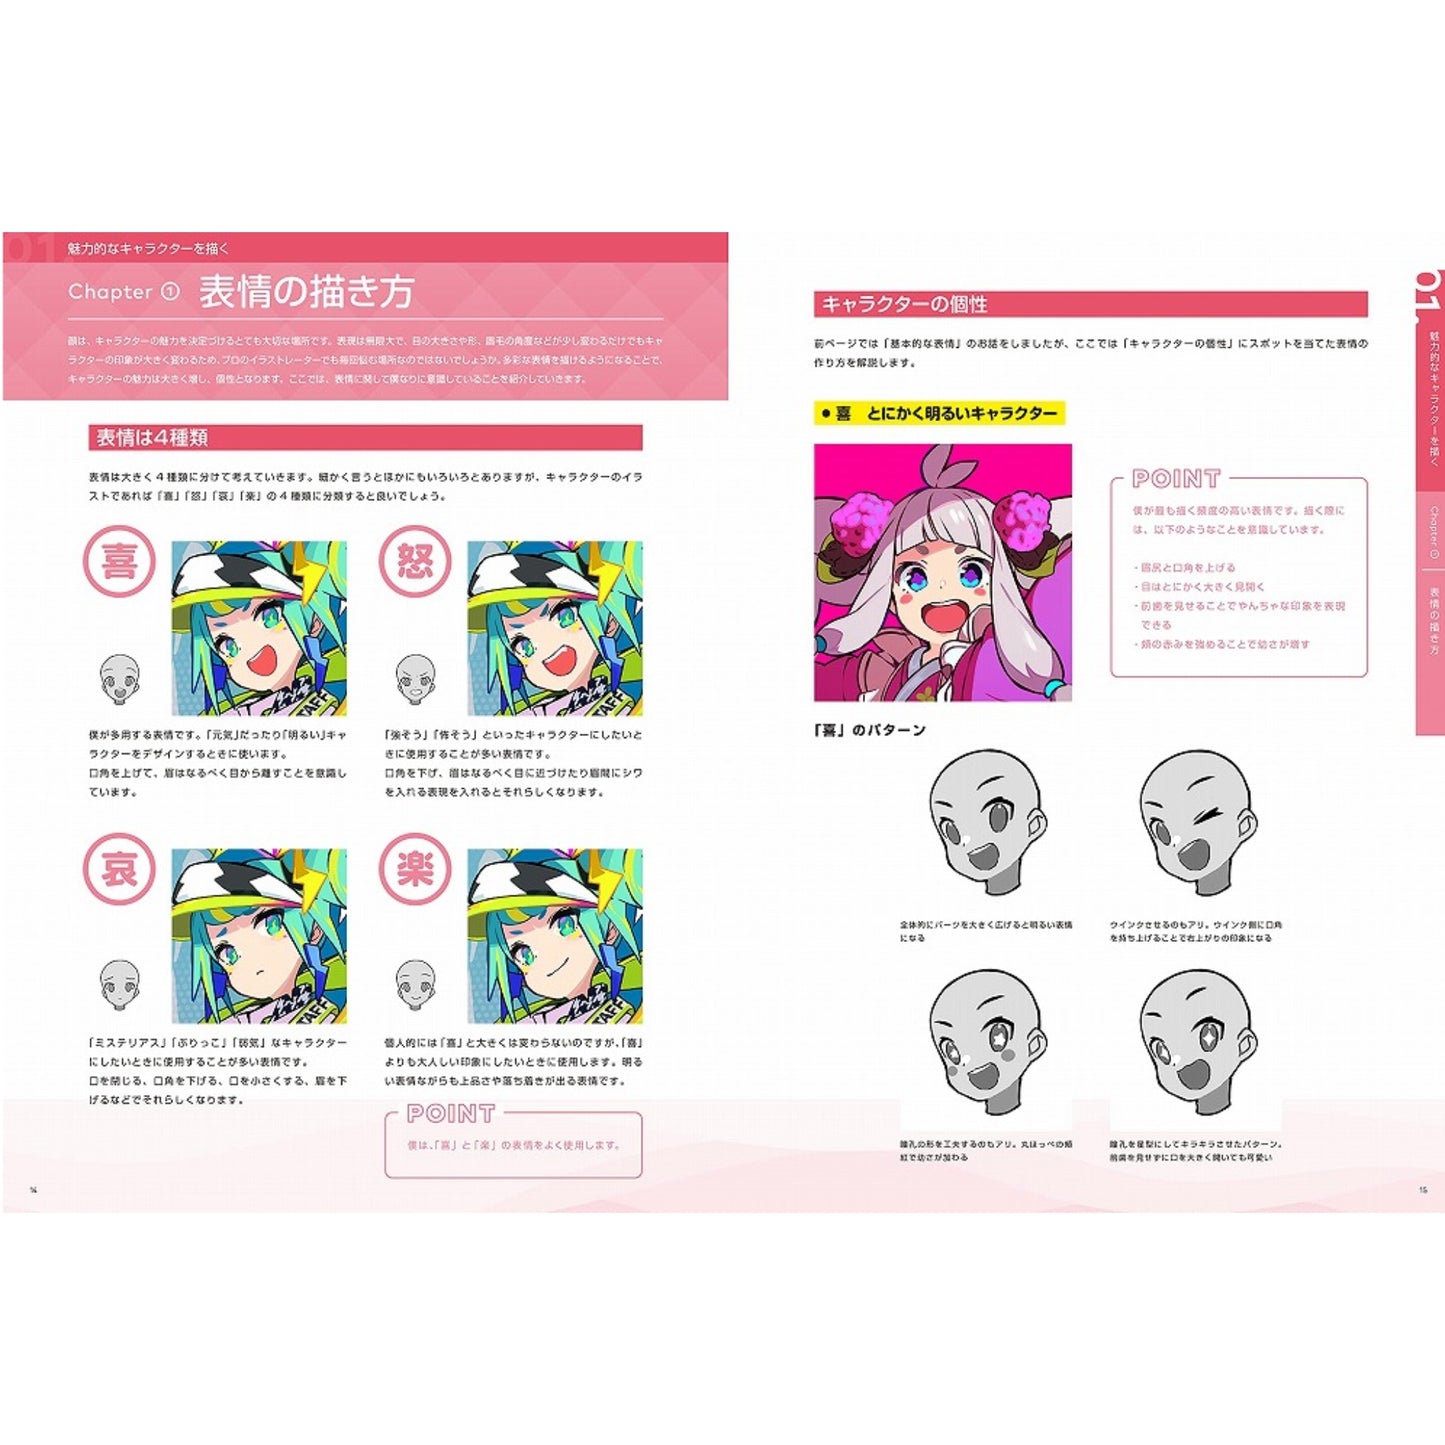 How to draw - jap. Zeichenbuch - poppiges Chara-Design mit Kurumitsu